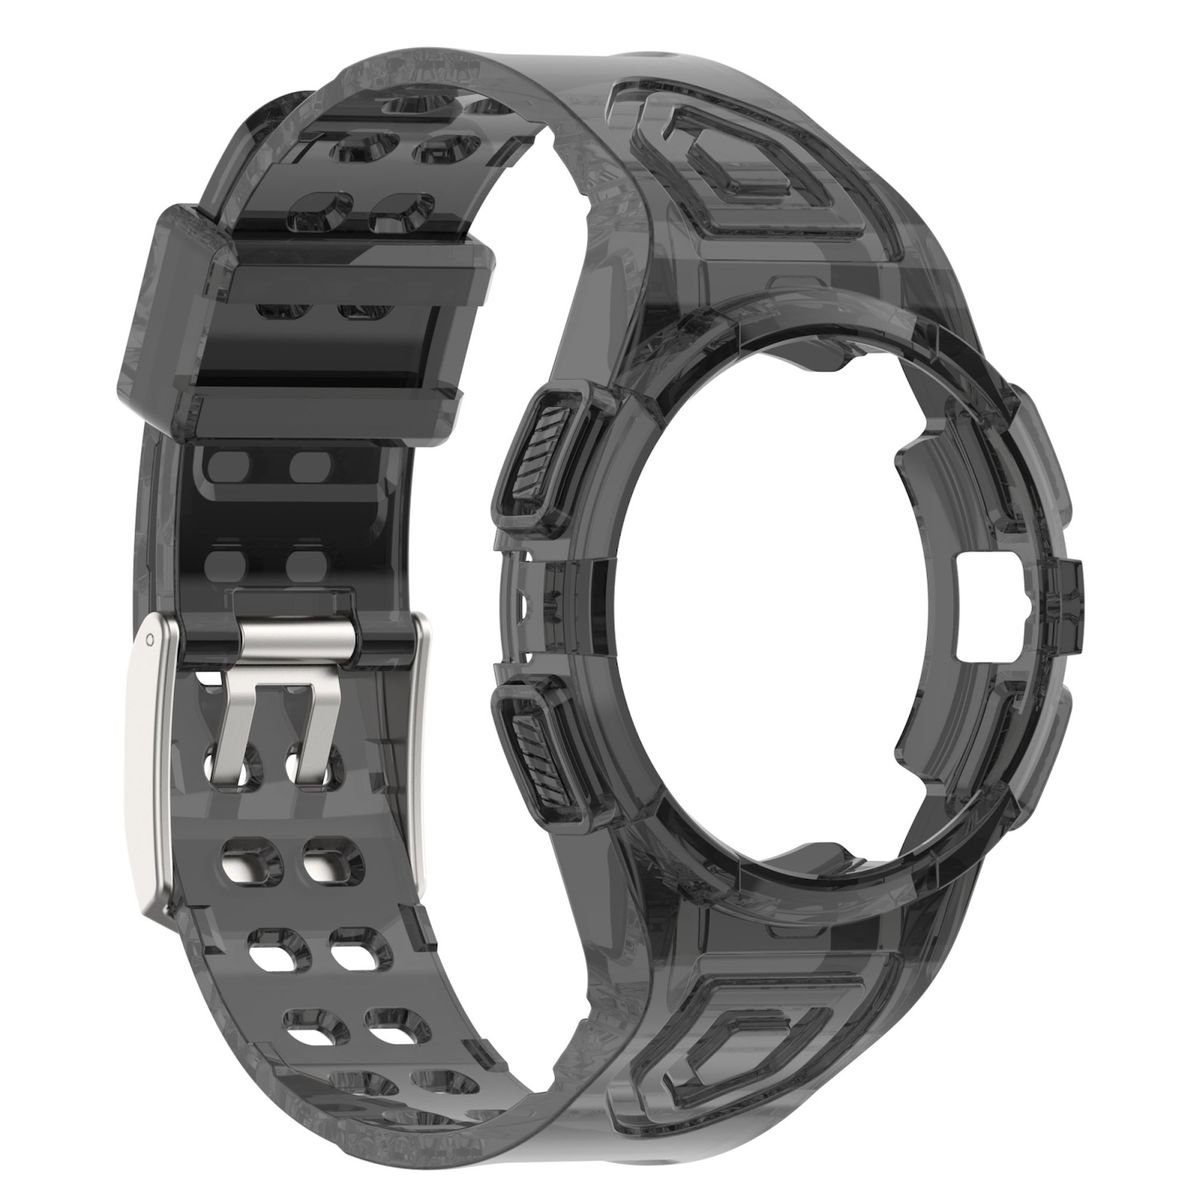 Schwarz 6 44mm mit Armband Galaxy Für Wigento Watch Smartwatch-Armband Schutz Gehäuse Samsung